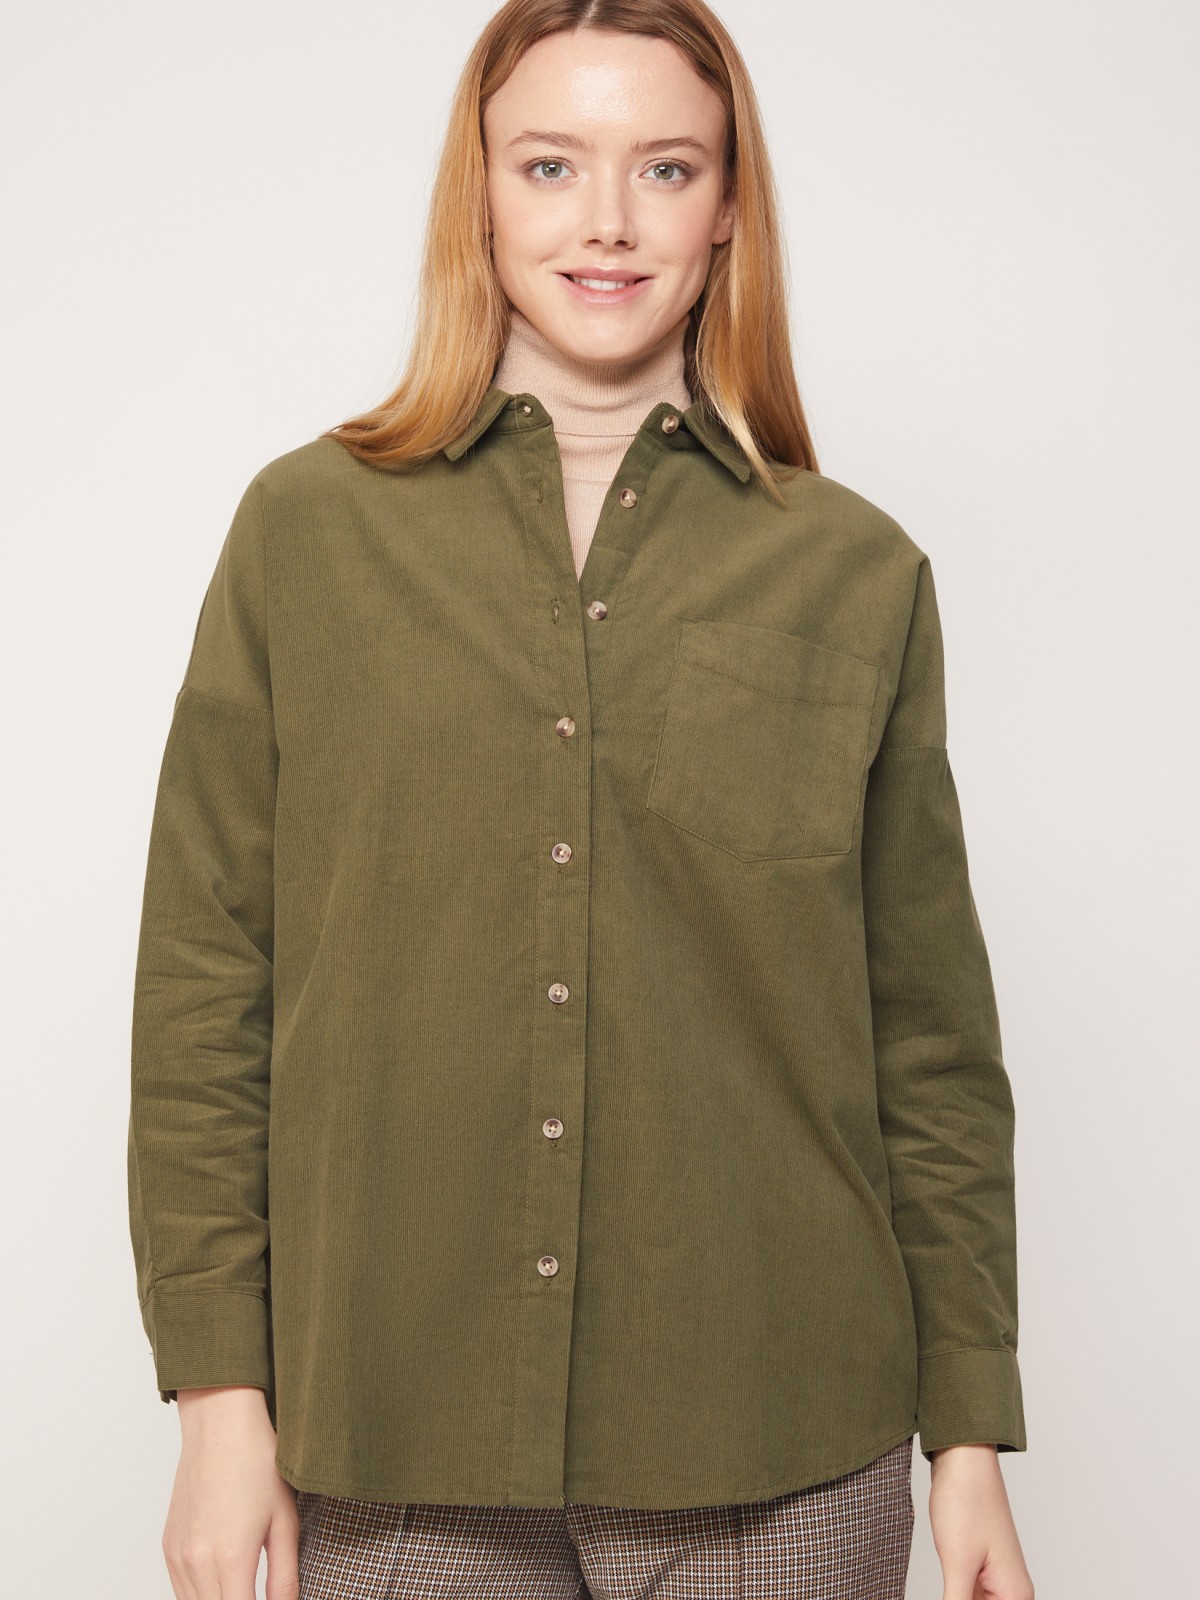 Вельветовая блузка-рубашка с длинным рукавом zolla 221331159113, цвет хаки, размер XXS - фото 2